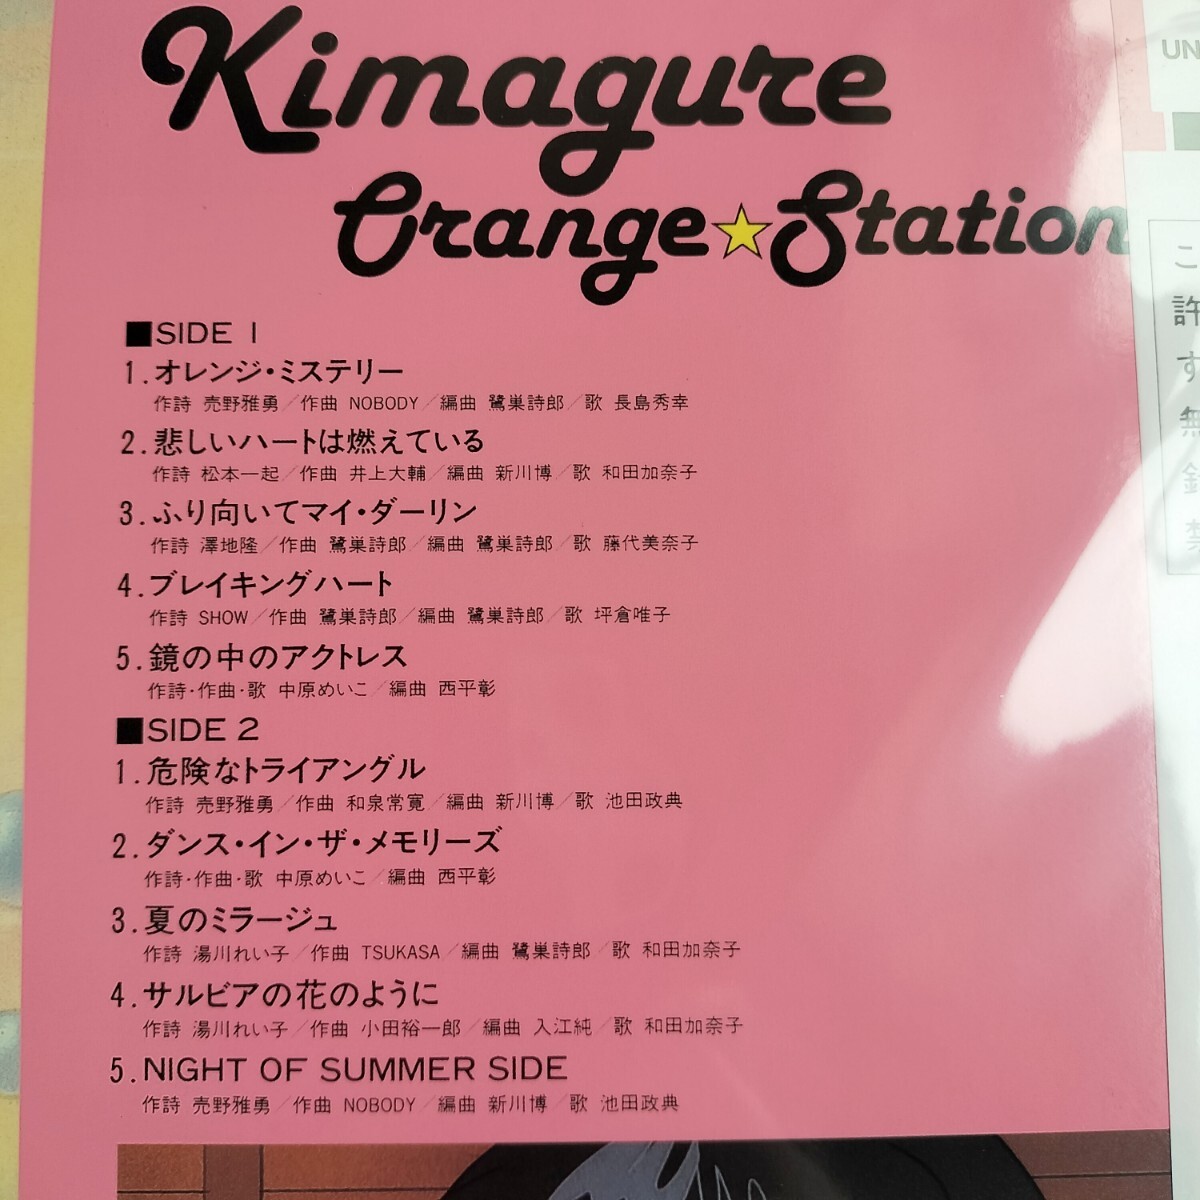 【新品】LP きまぐれオレンジ☆ステーション 初回生産限定盤 アナログレコード きまぐれオレンジ☆ロード サウンドトラック アナログ盤の画像3